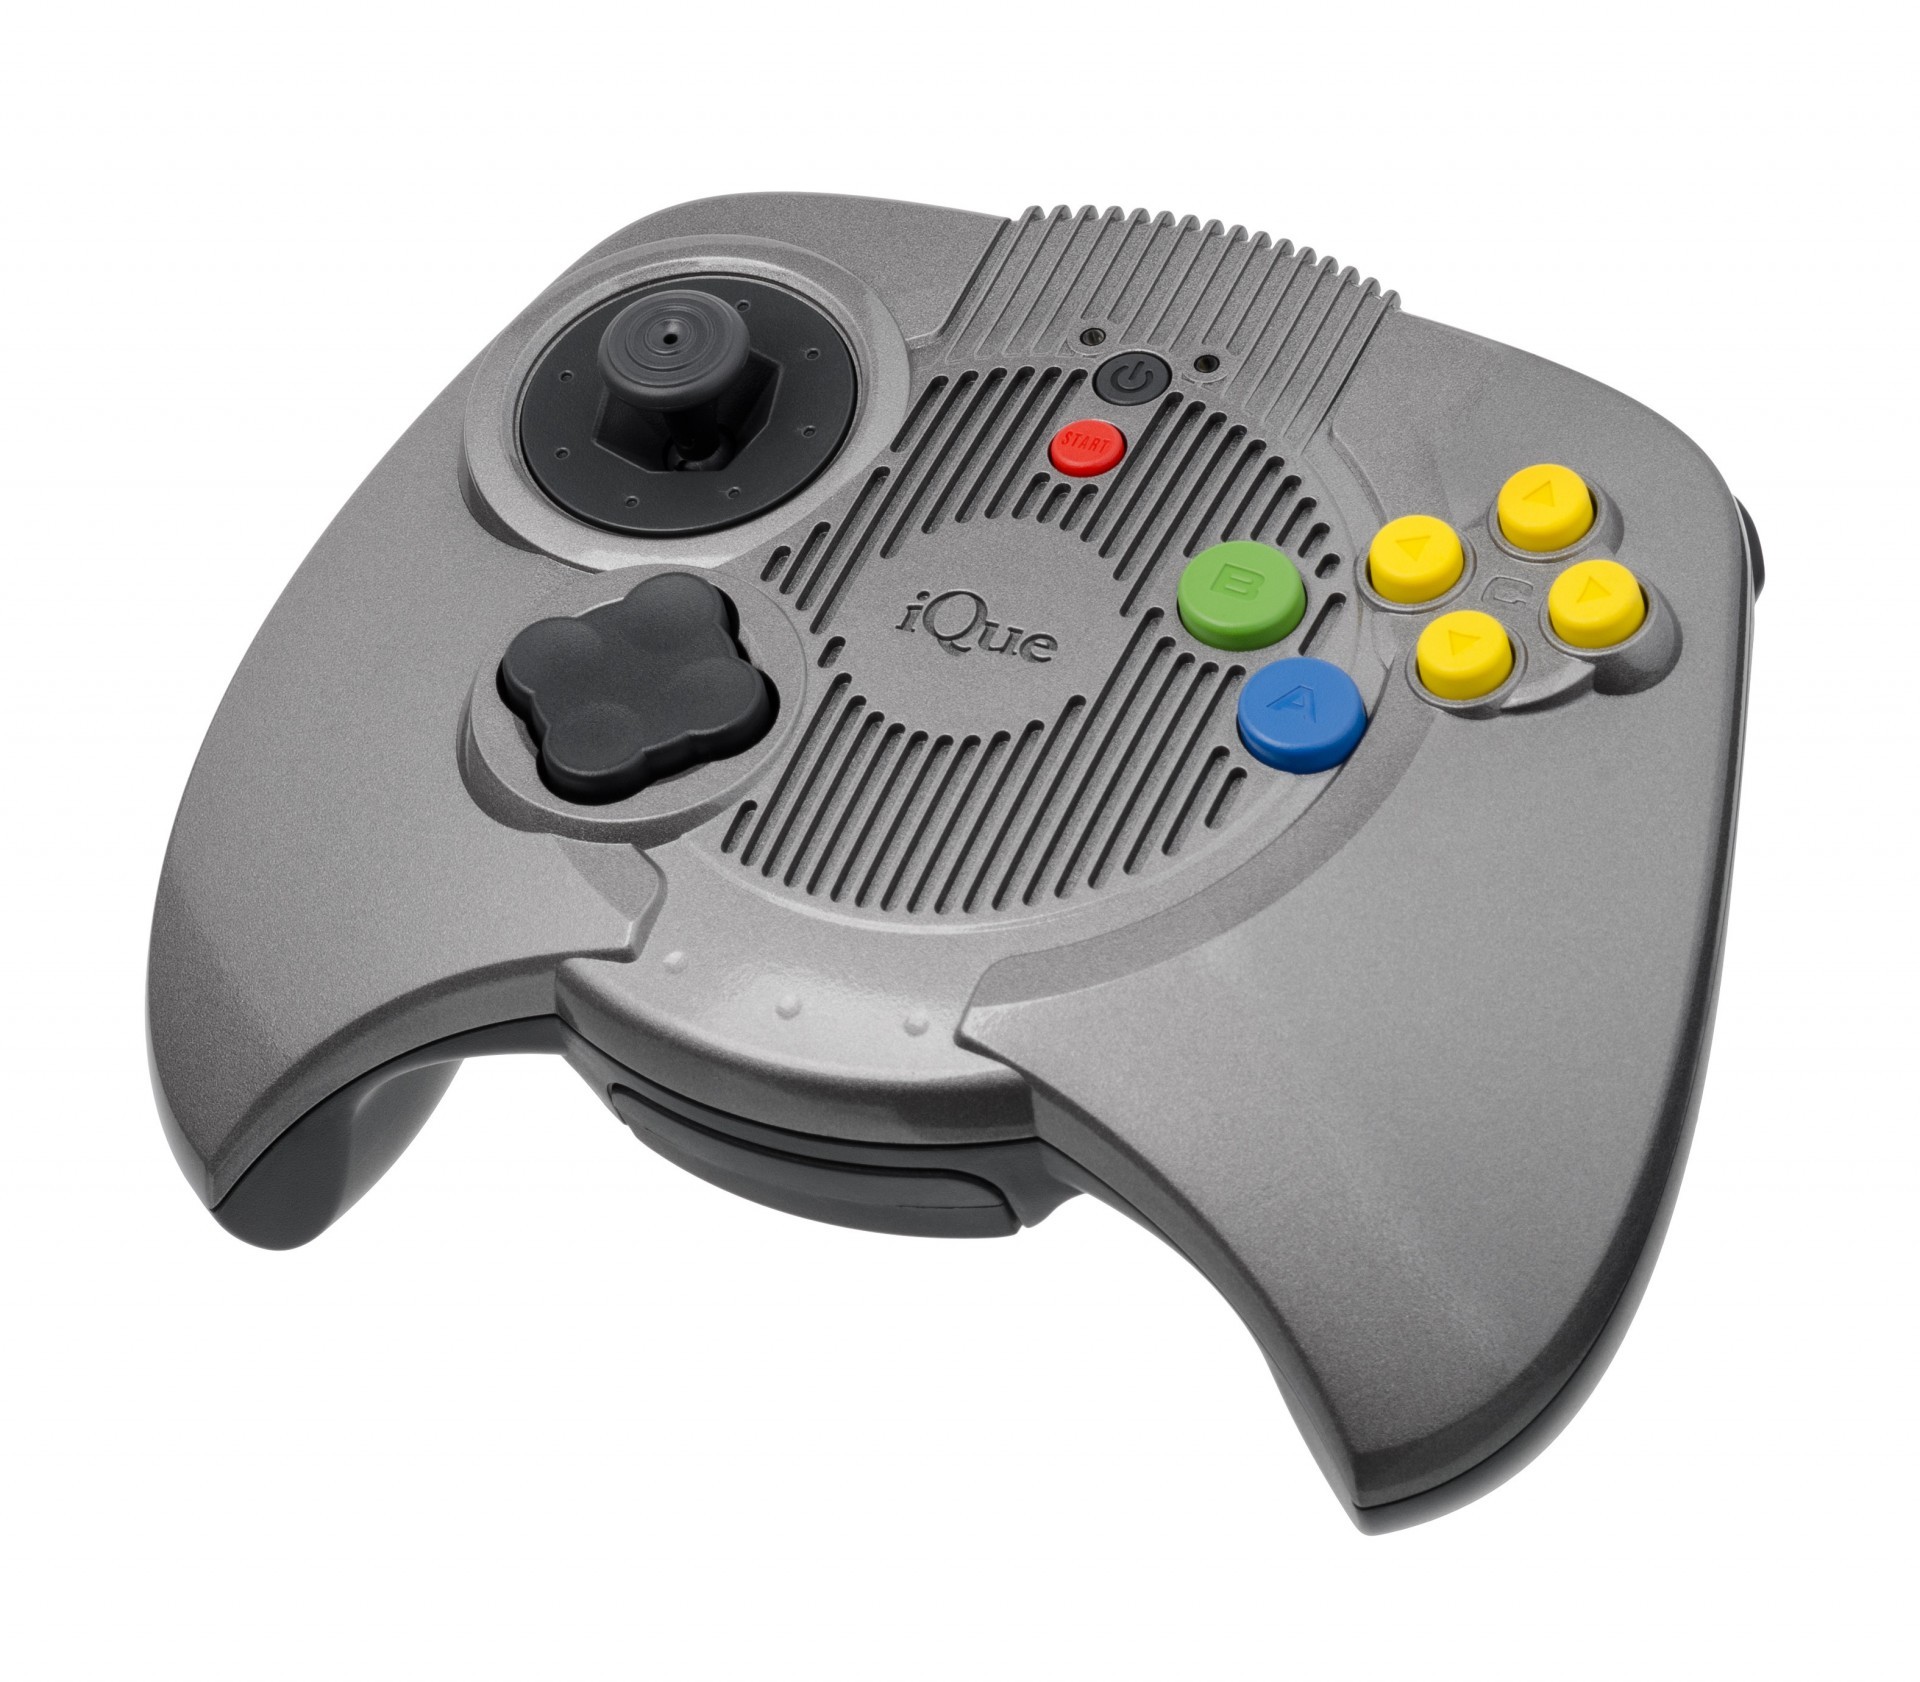 任天堂首款 3D 繪圖主機「Nintendo 64」今日迎接誕生 25 周年紀念